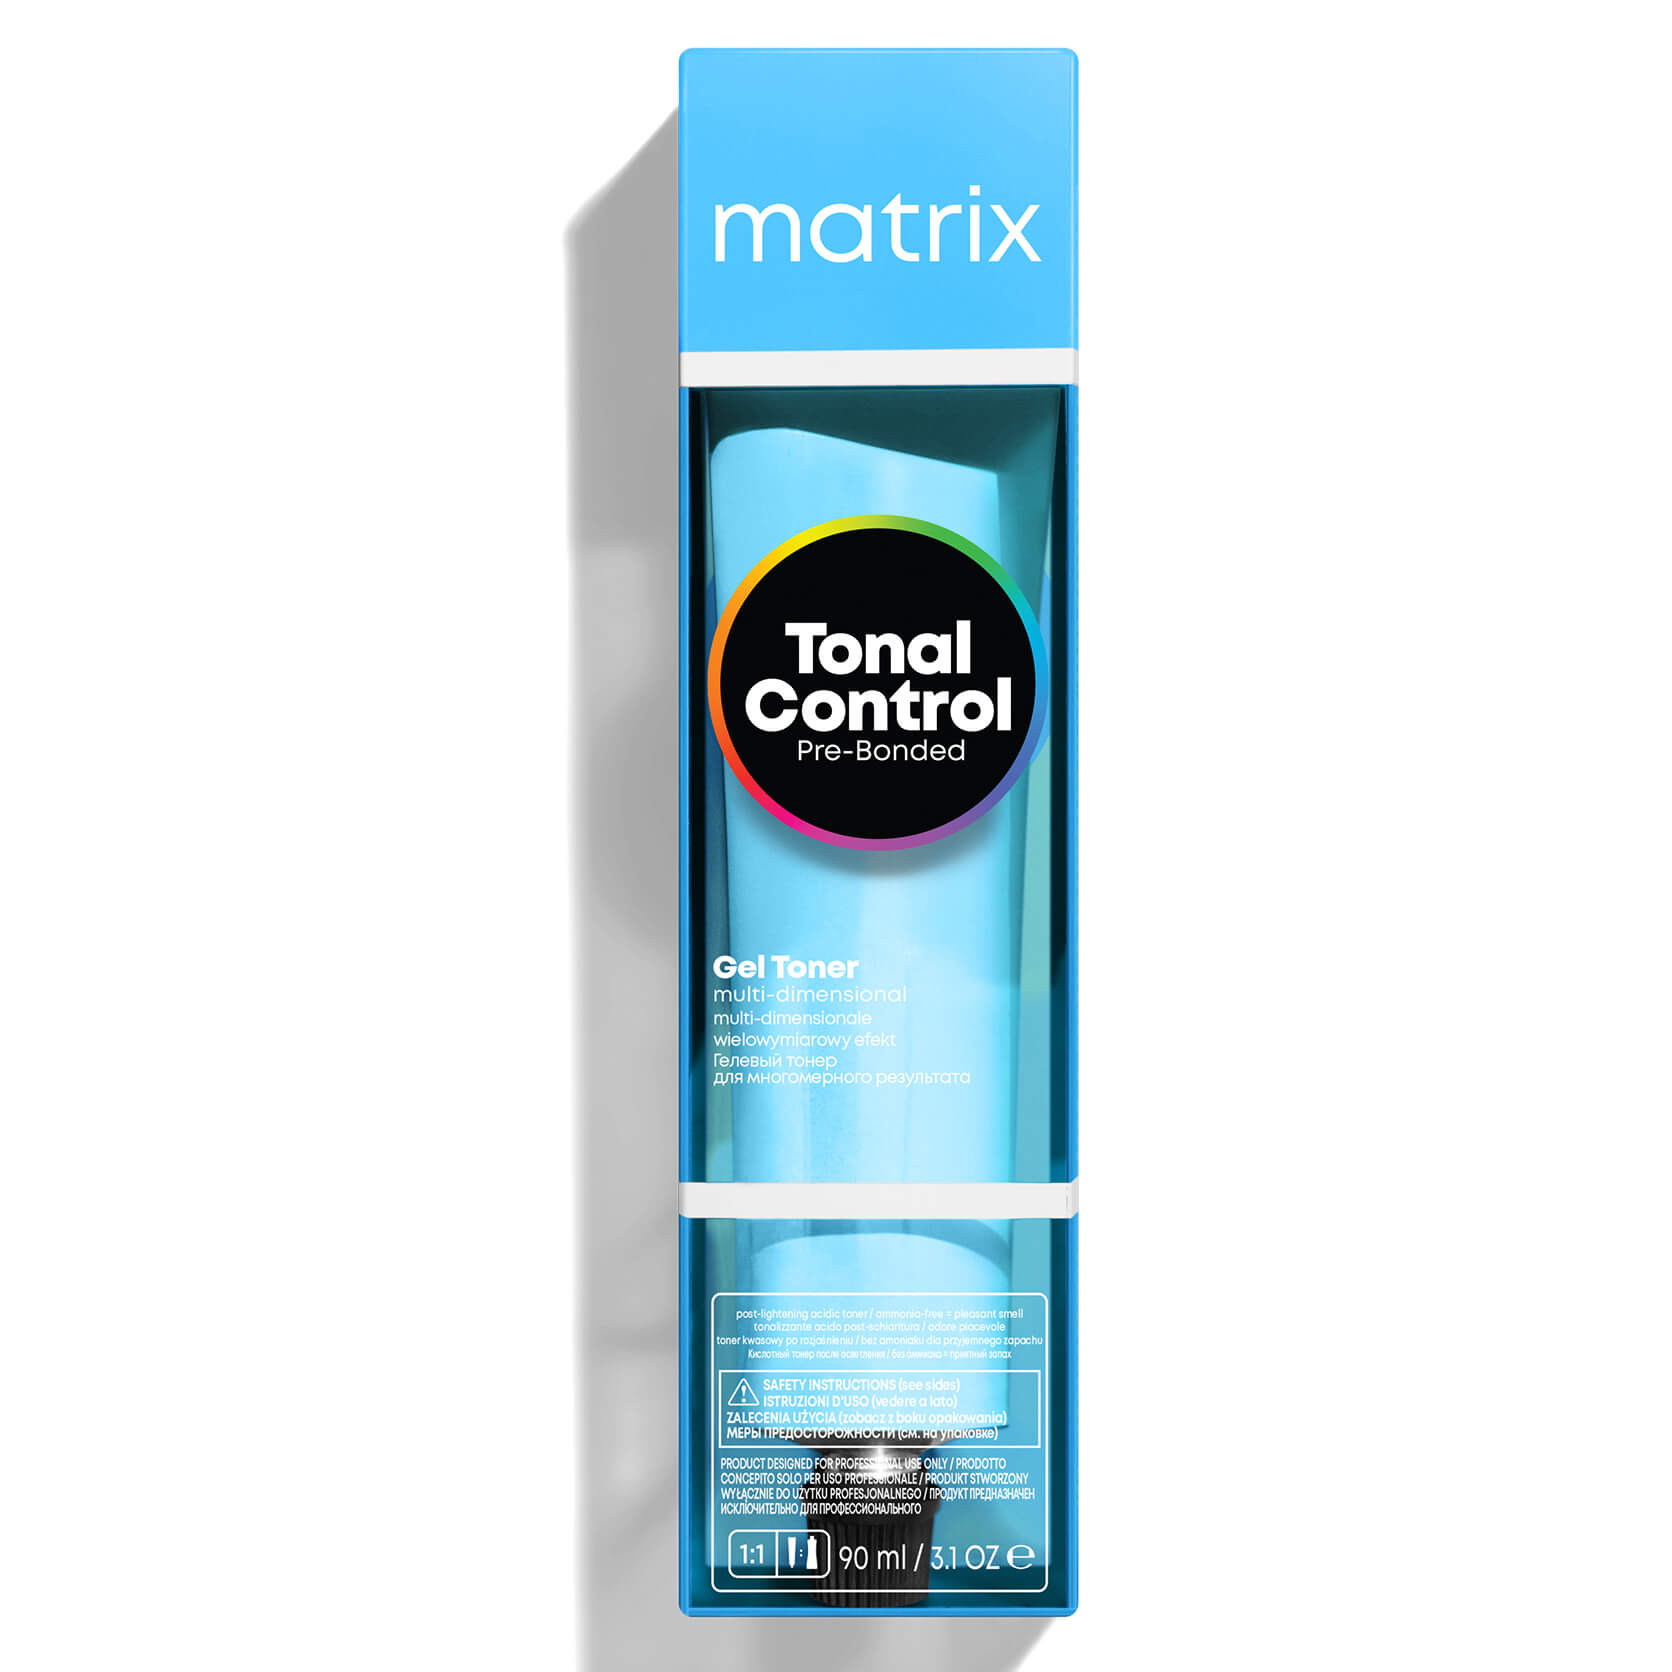 Matrix Tonal Control Pre-Bonded Gel Toner - 7NA 90ml